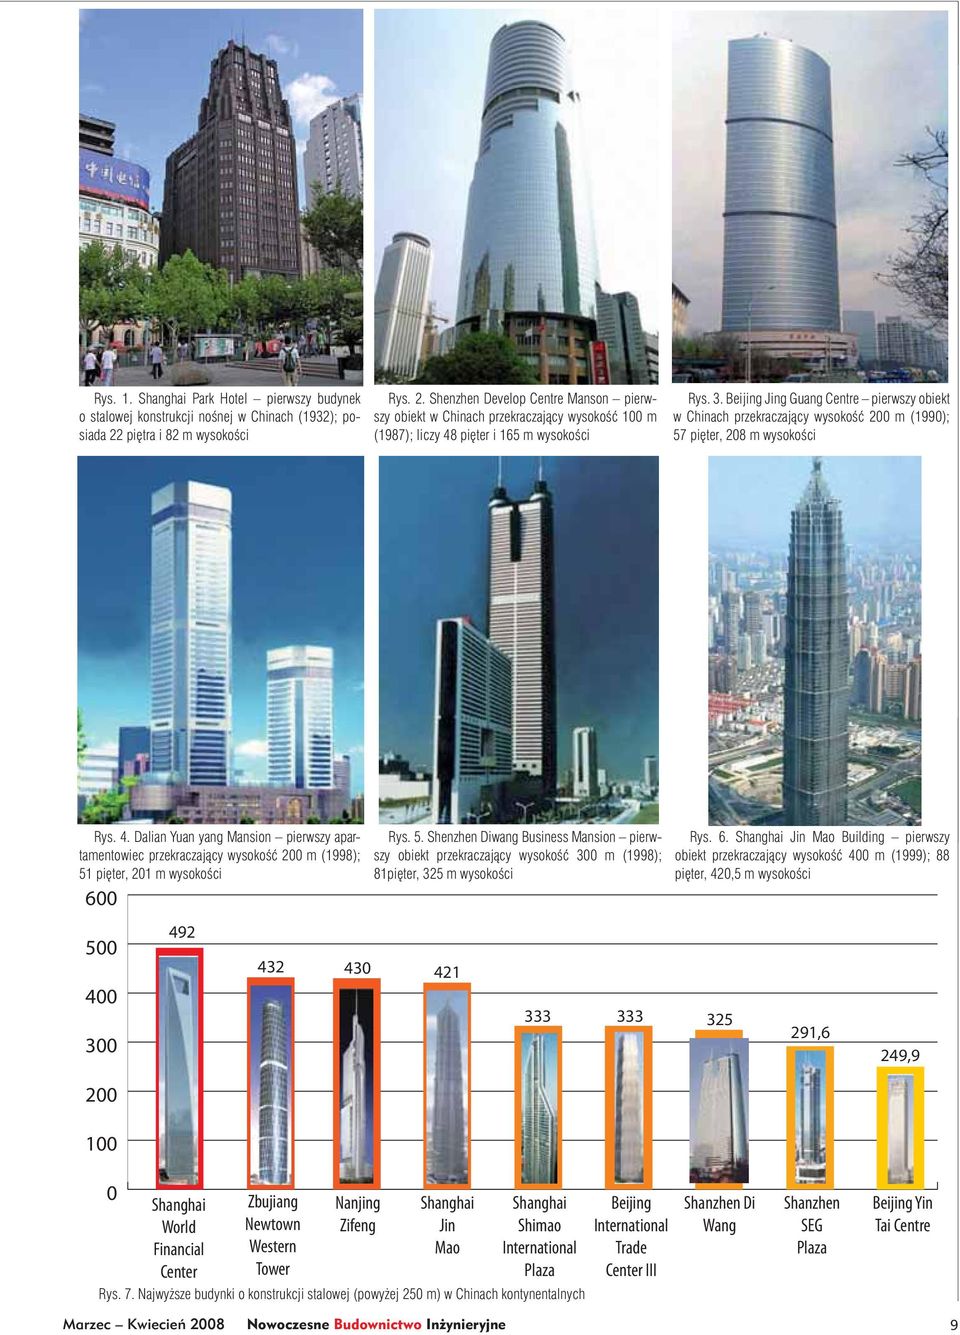 Beijing Jing Guang Centre pierwszy obiekt w Chinach przekraczający wysokość 200 m (1990); 57 pięter, 208 m wysokości Rys. 4.